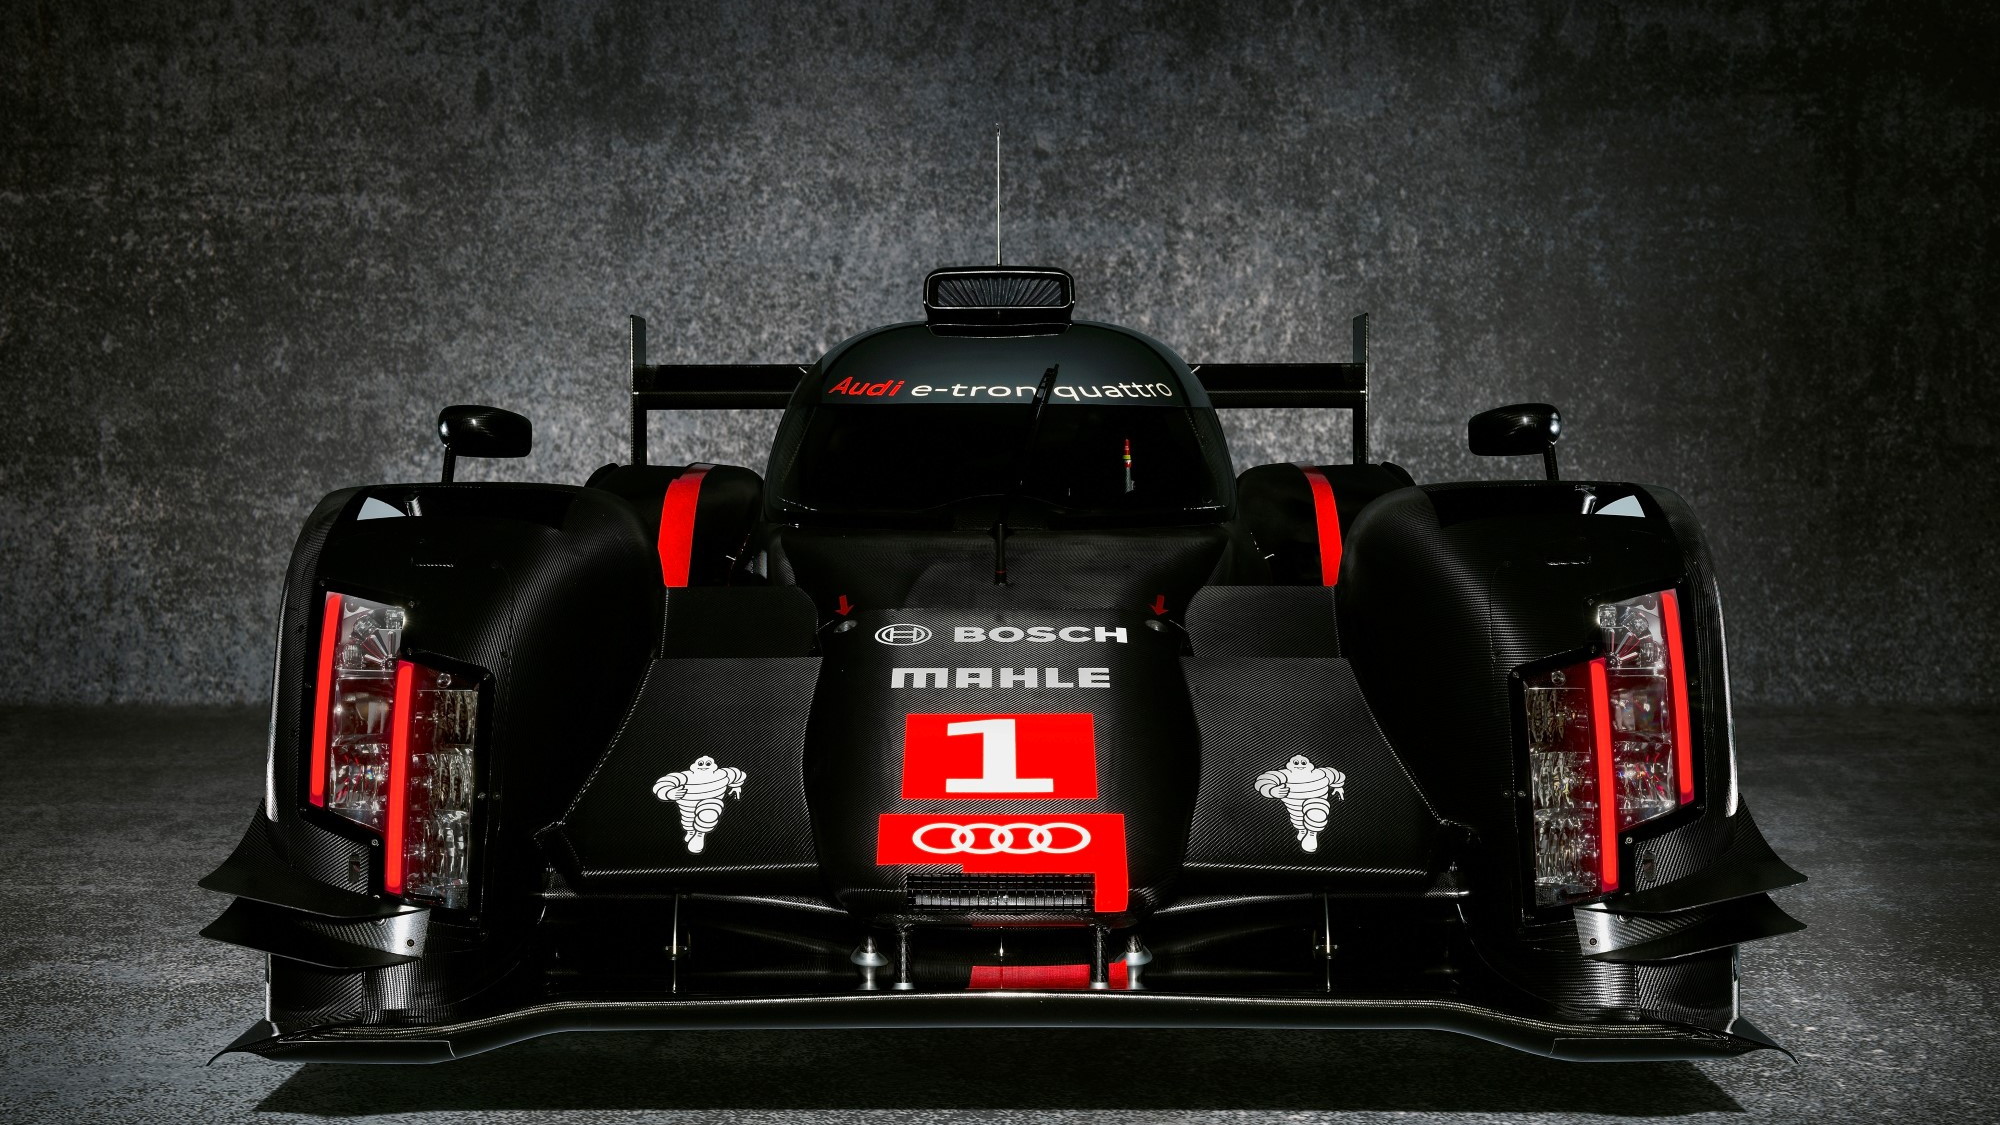 2014 Audi R18 e-tron quattro Le Mans Prototype race car